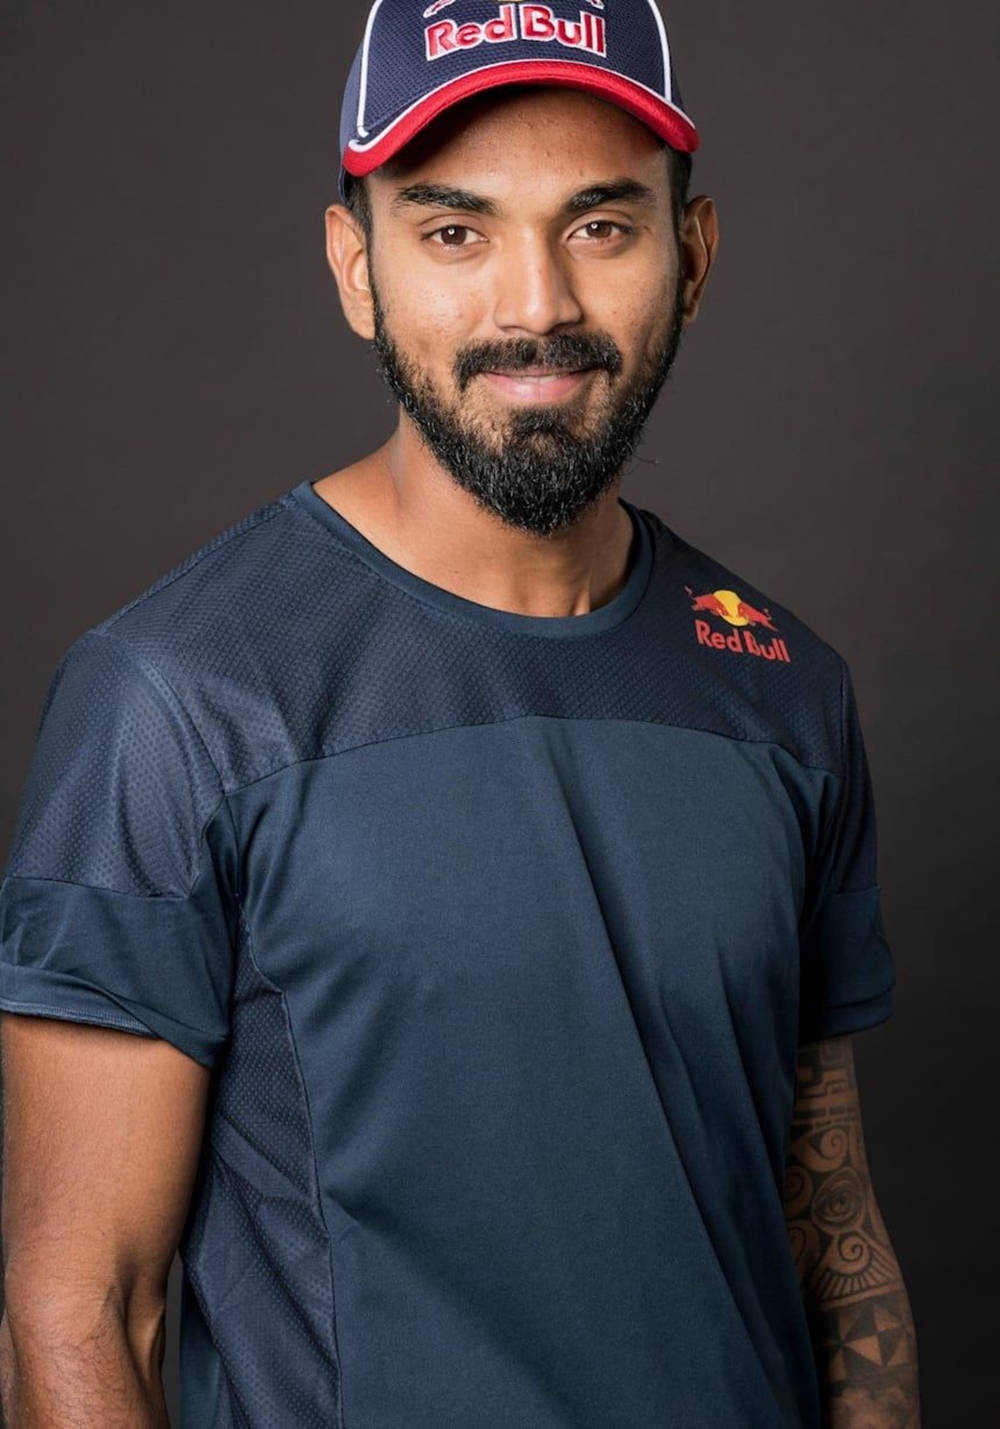 Kl Rahul Smiling For Red Bull